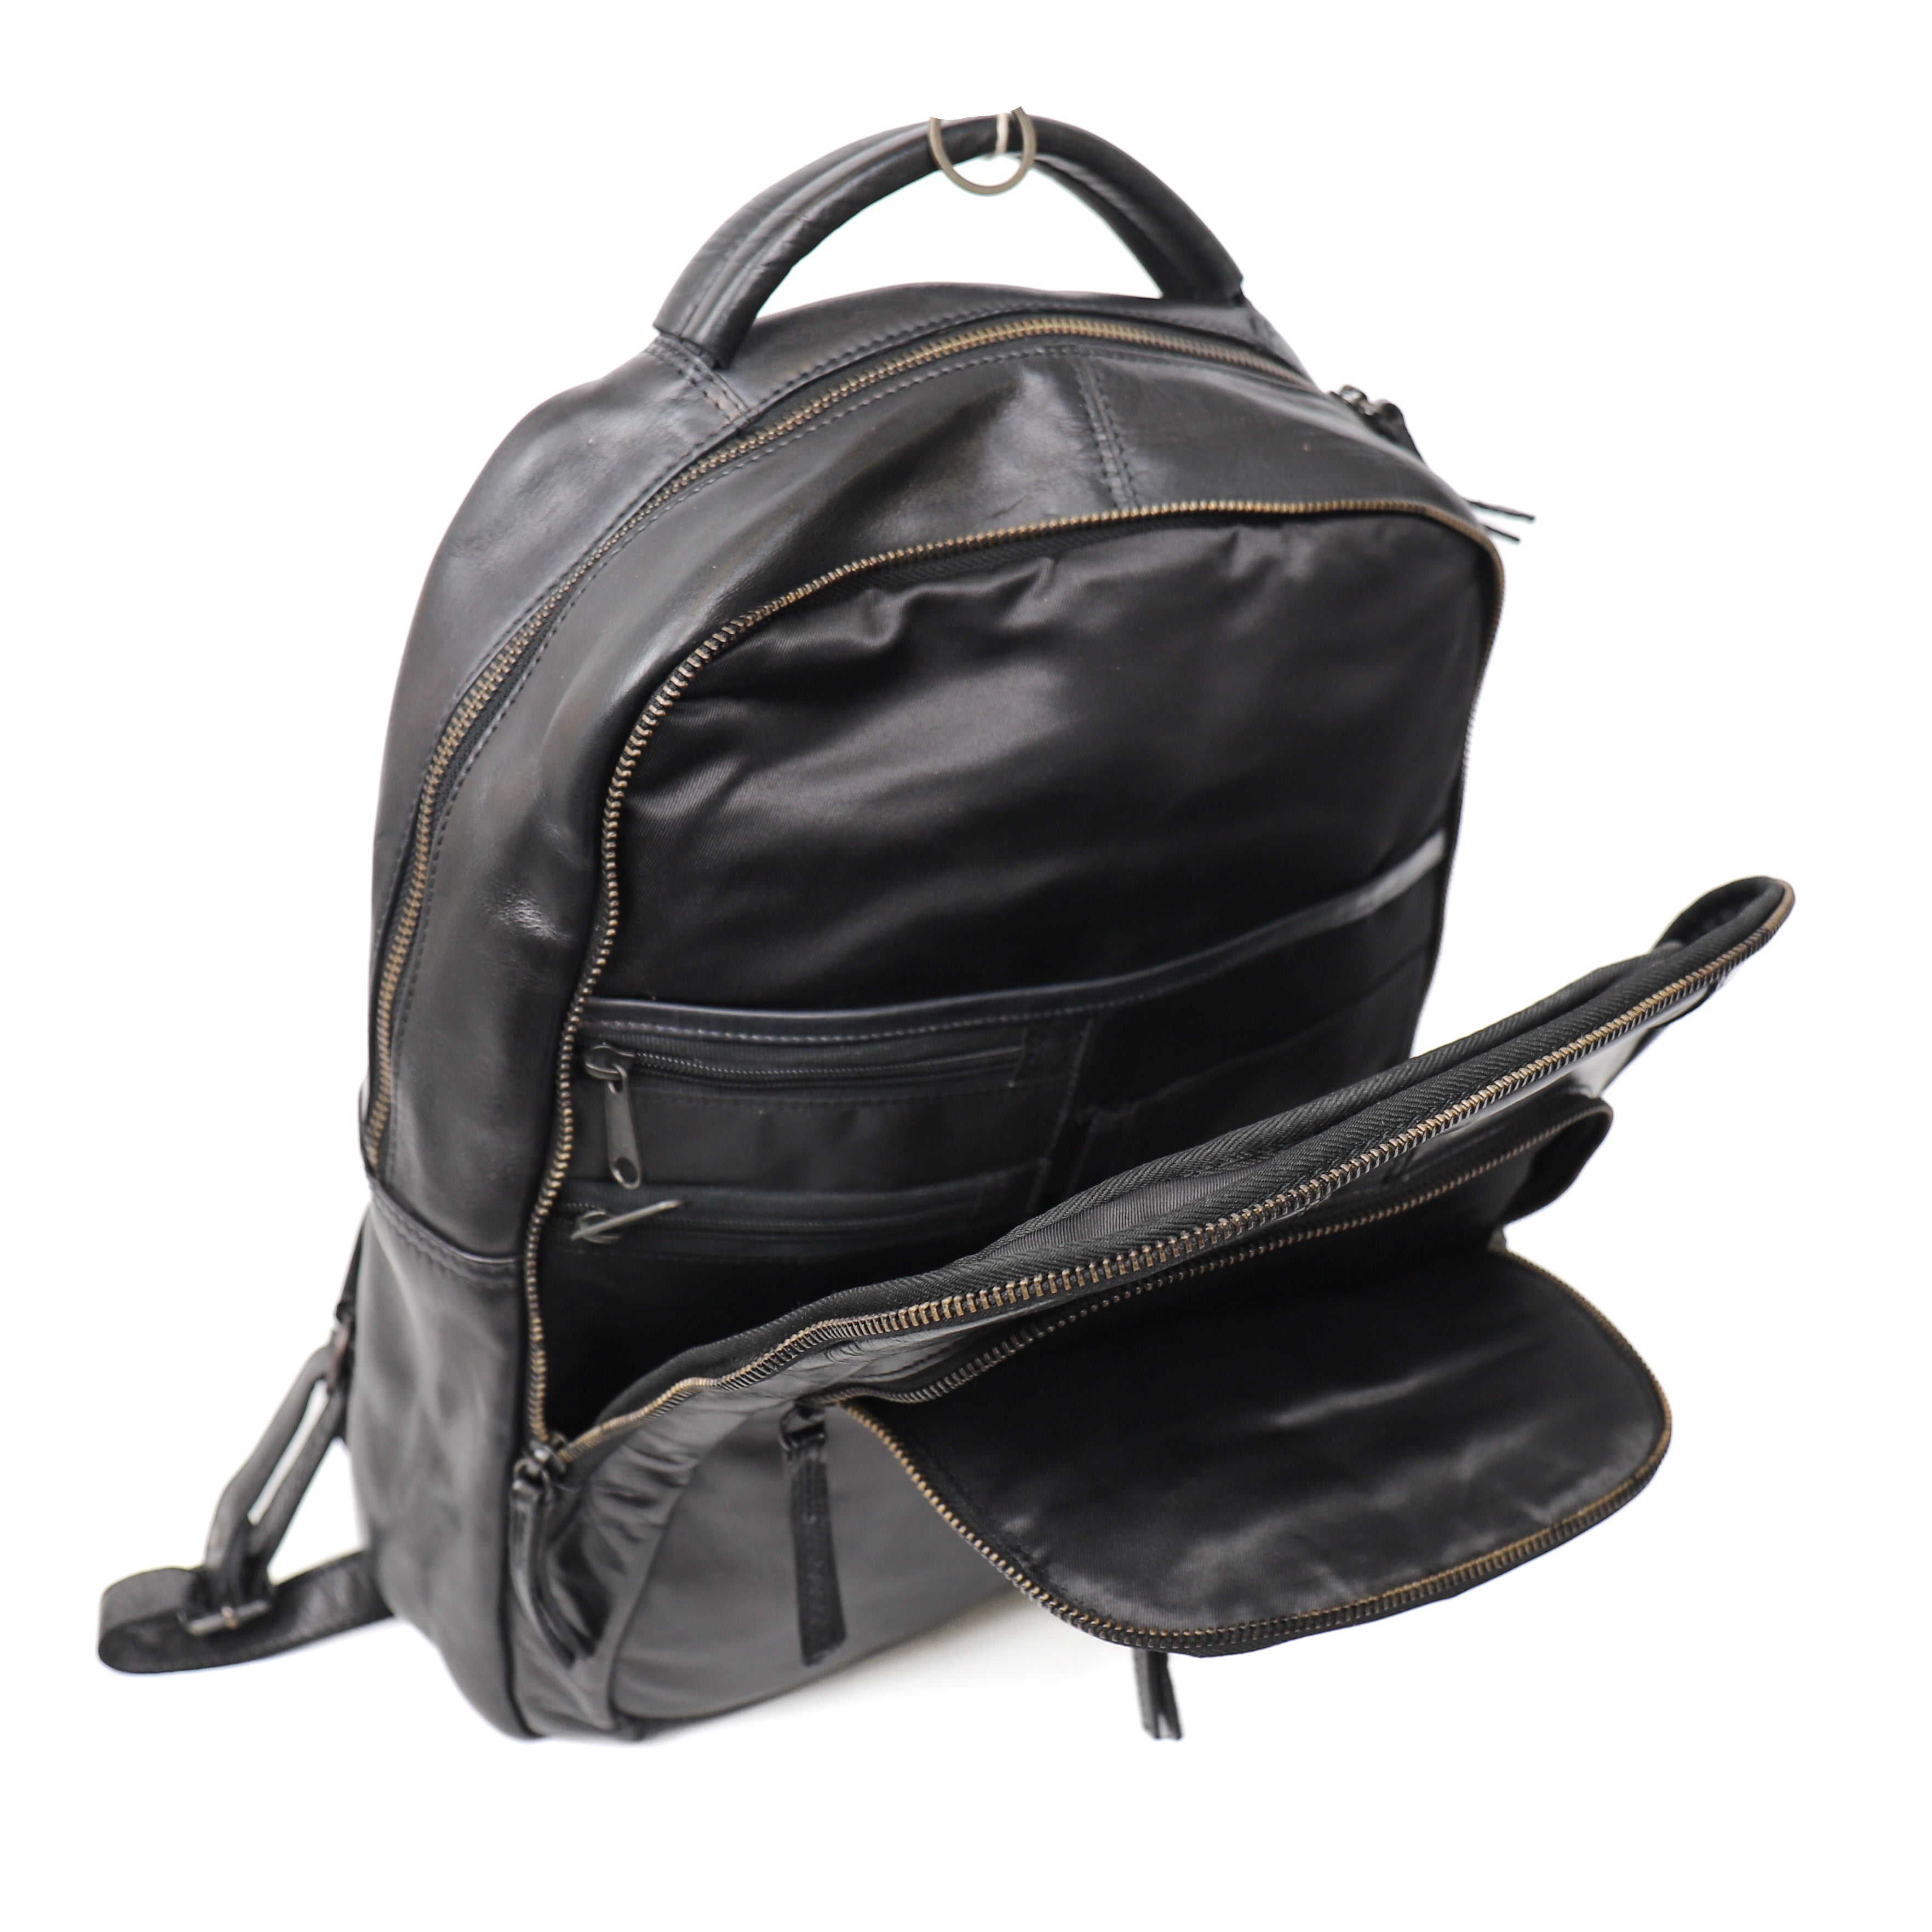 Backpack 'Mace' black